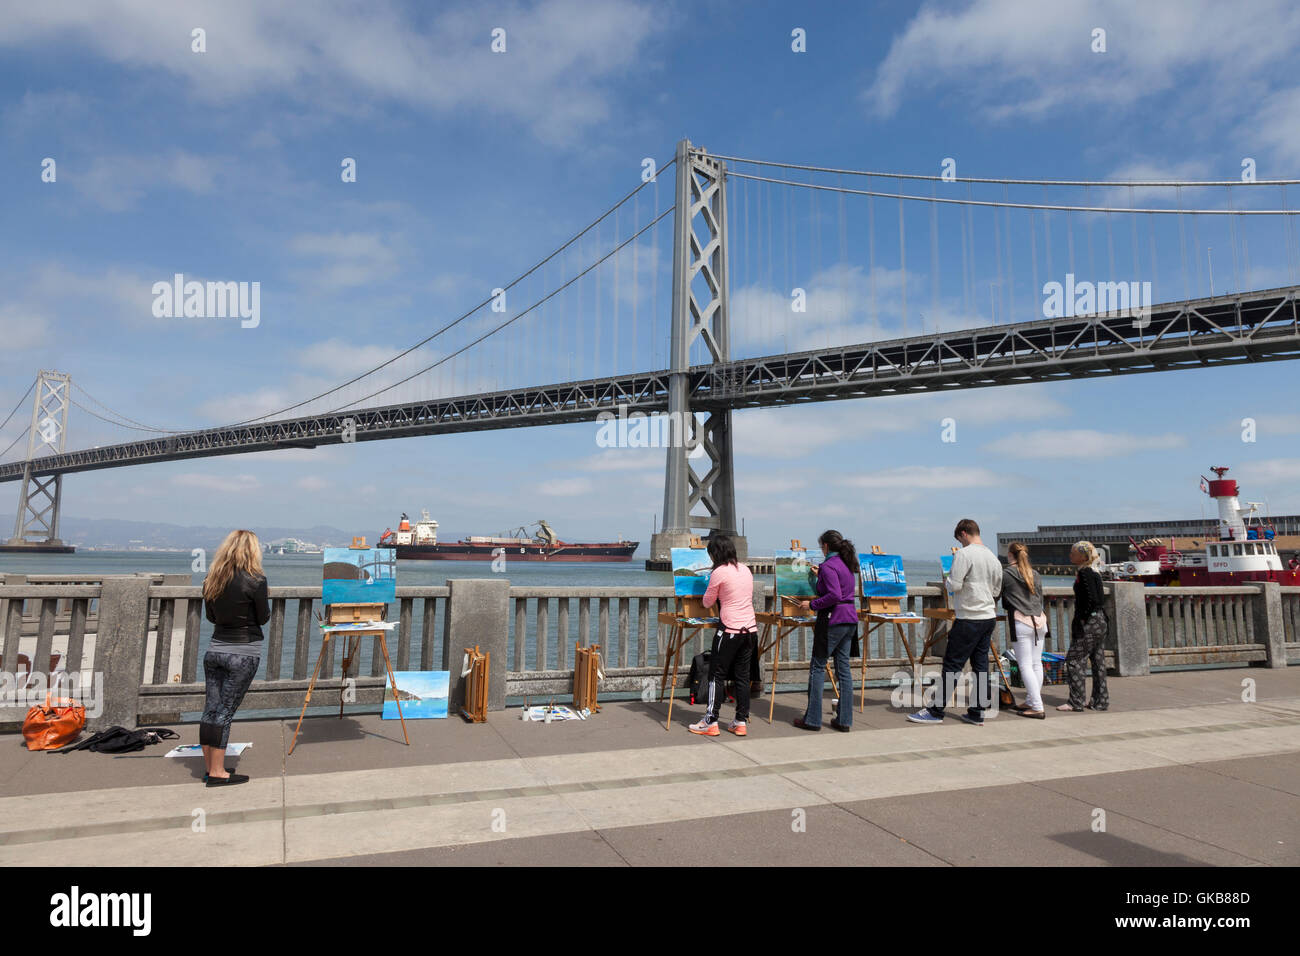 San Francisco, Californie : la classe d'Art de la peinture à San Francisco Oakland Bay Bridge plein air sur l'Embarcadero. Banque D'Images